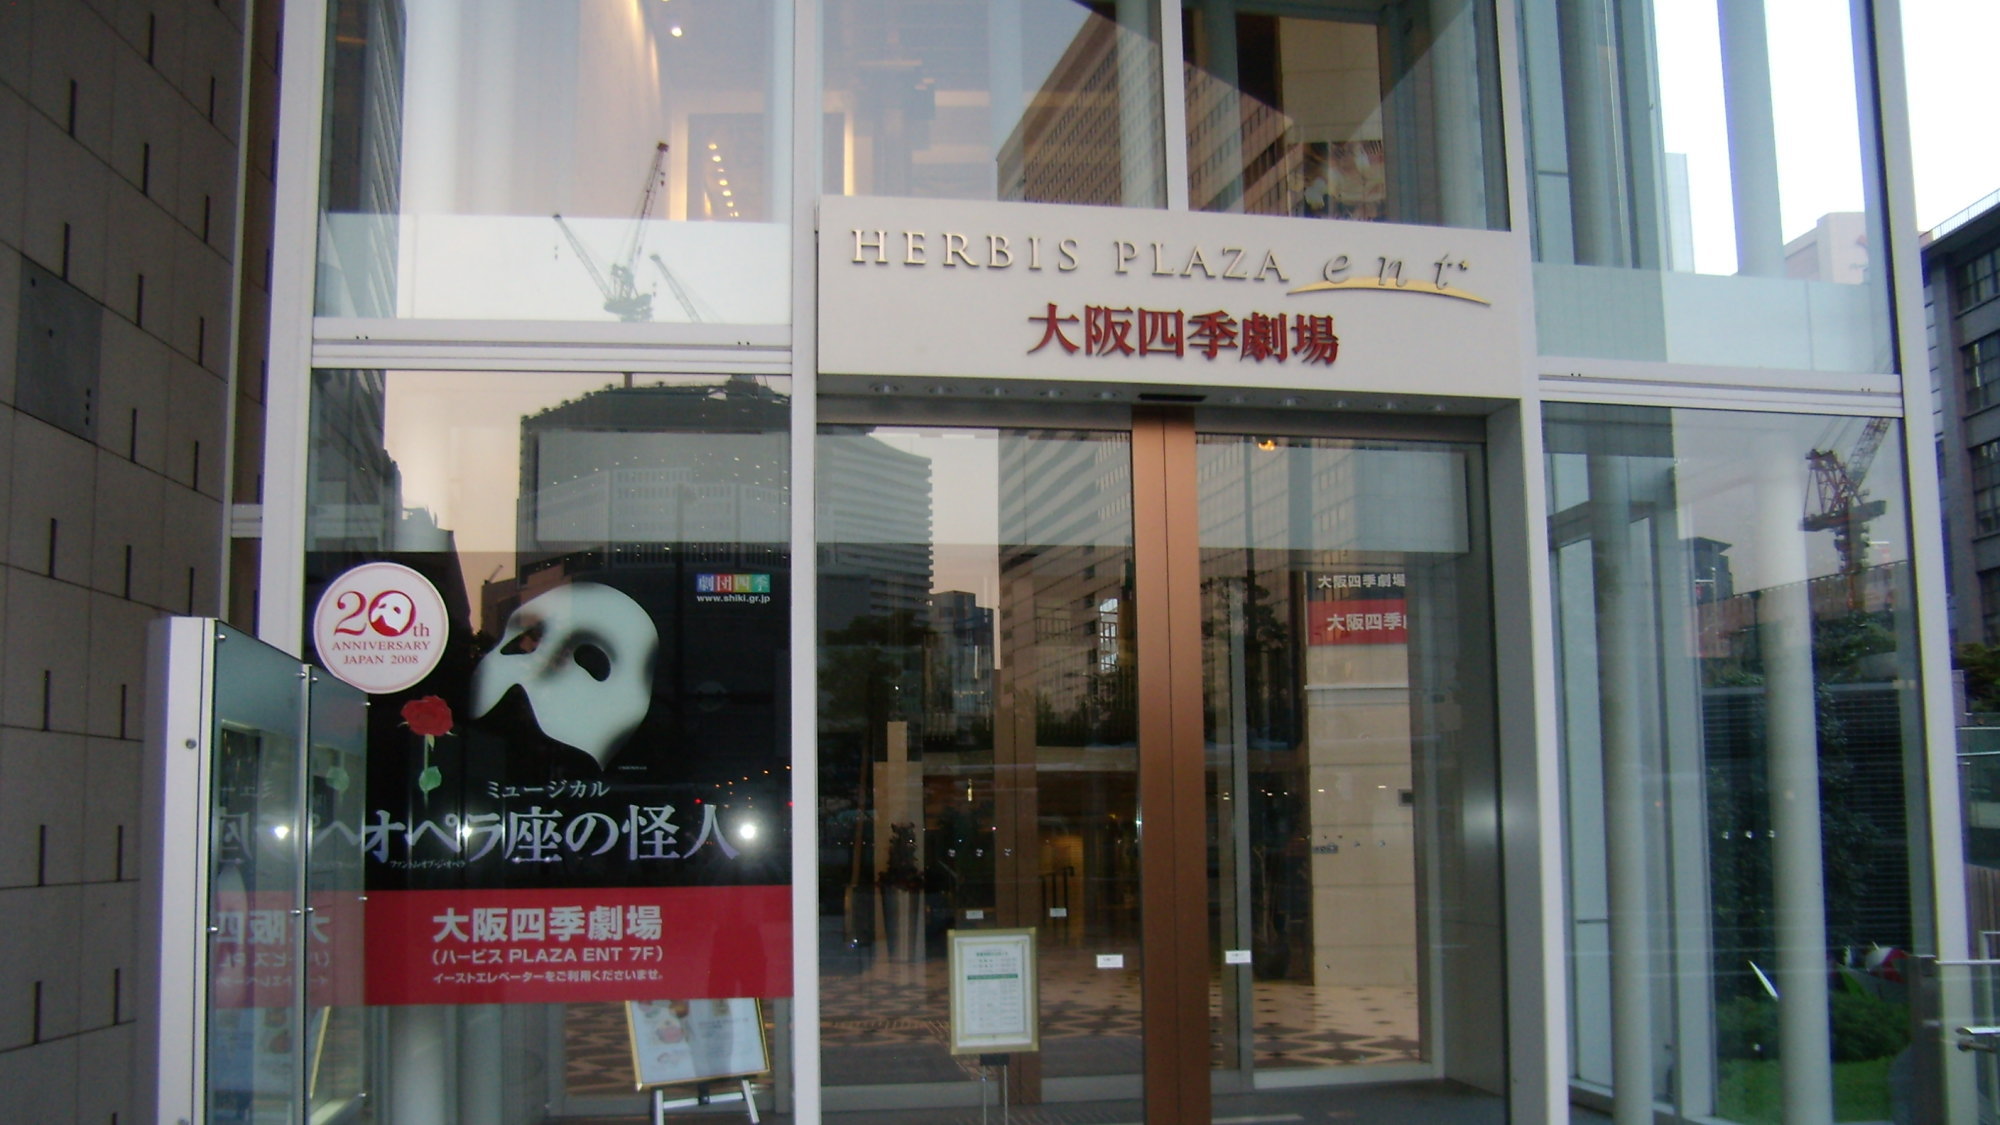 ■周辺施設：「大阪四季劇場」ハービス・エント7階に併設されている劇場。